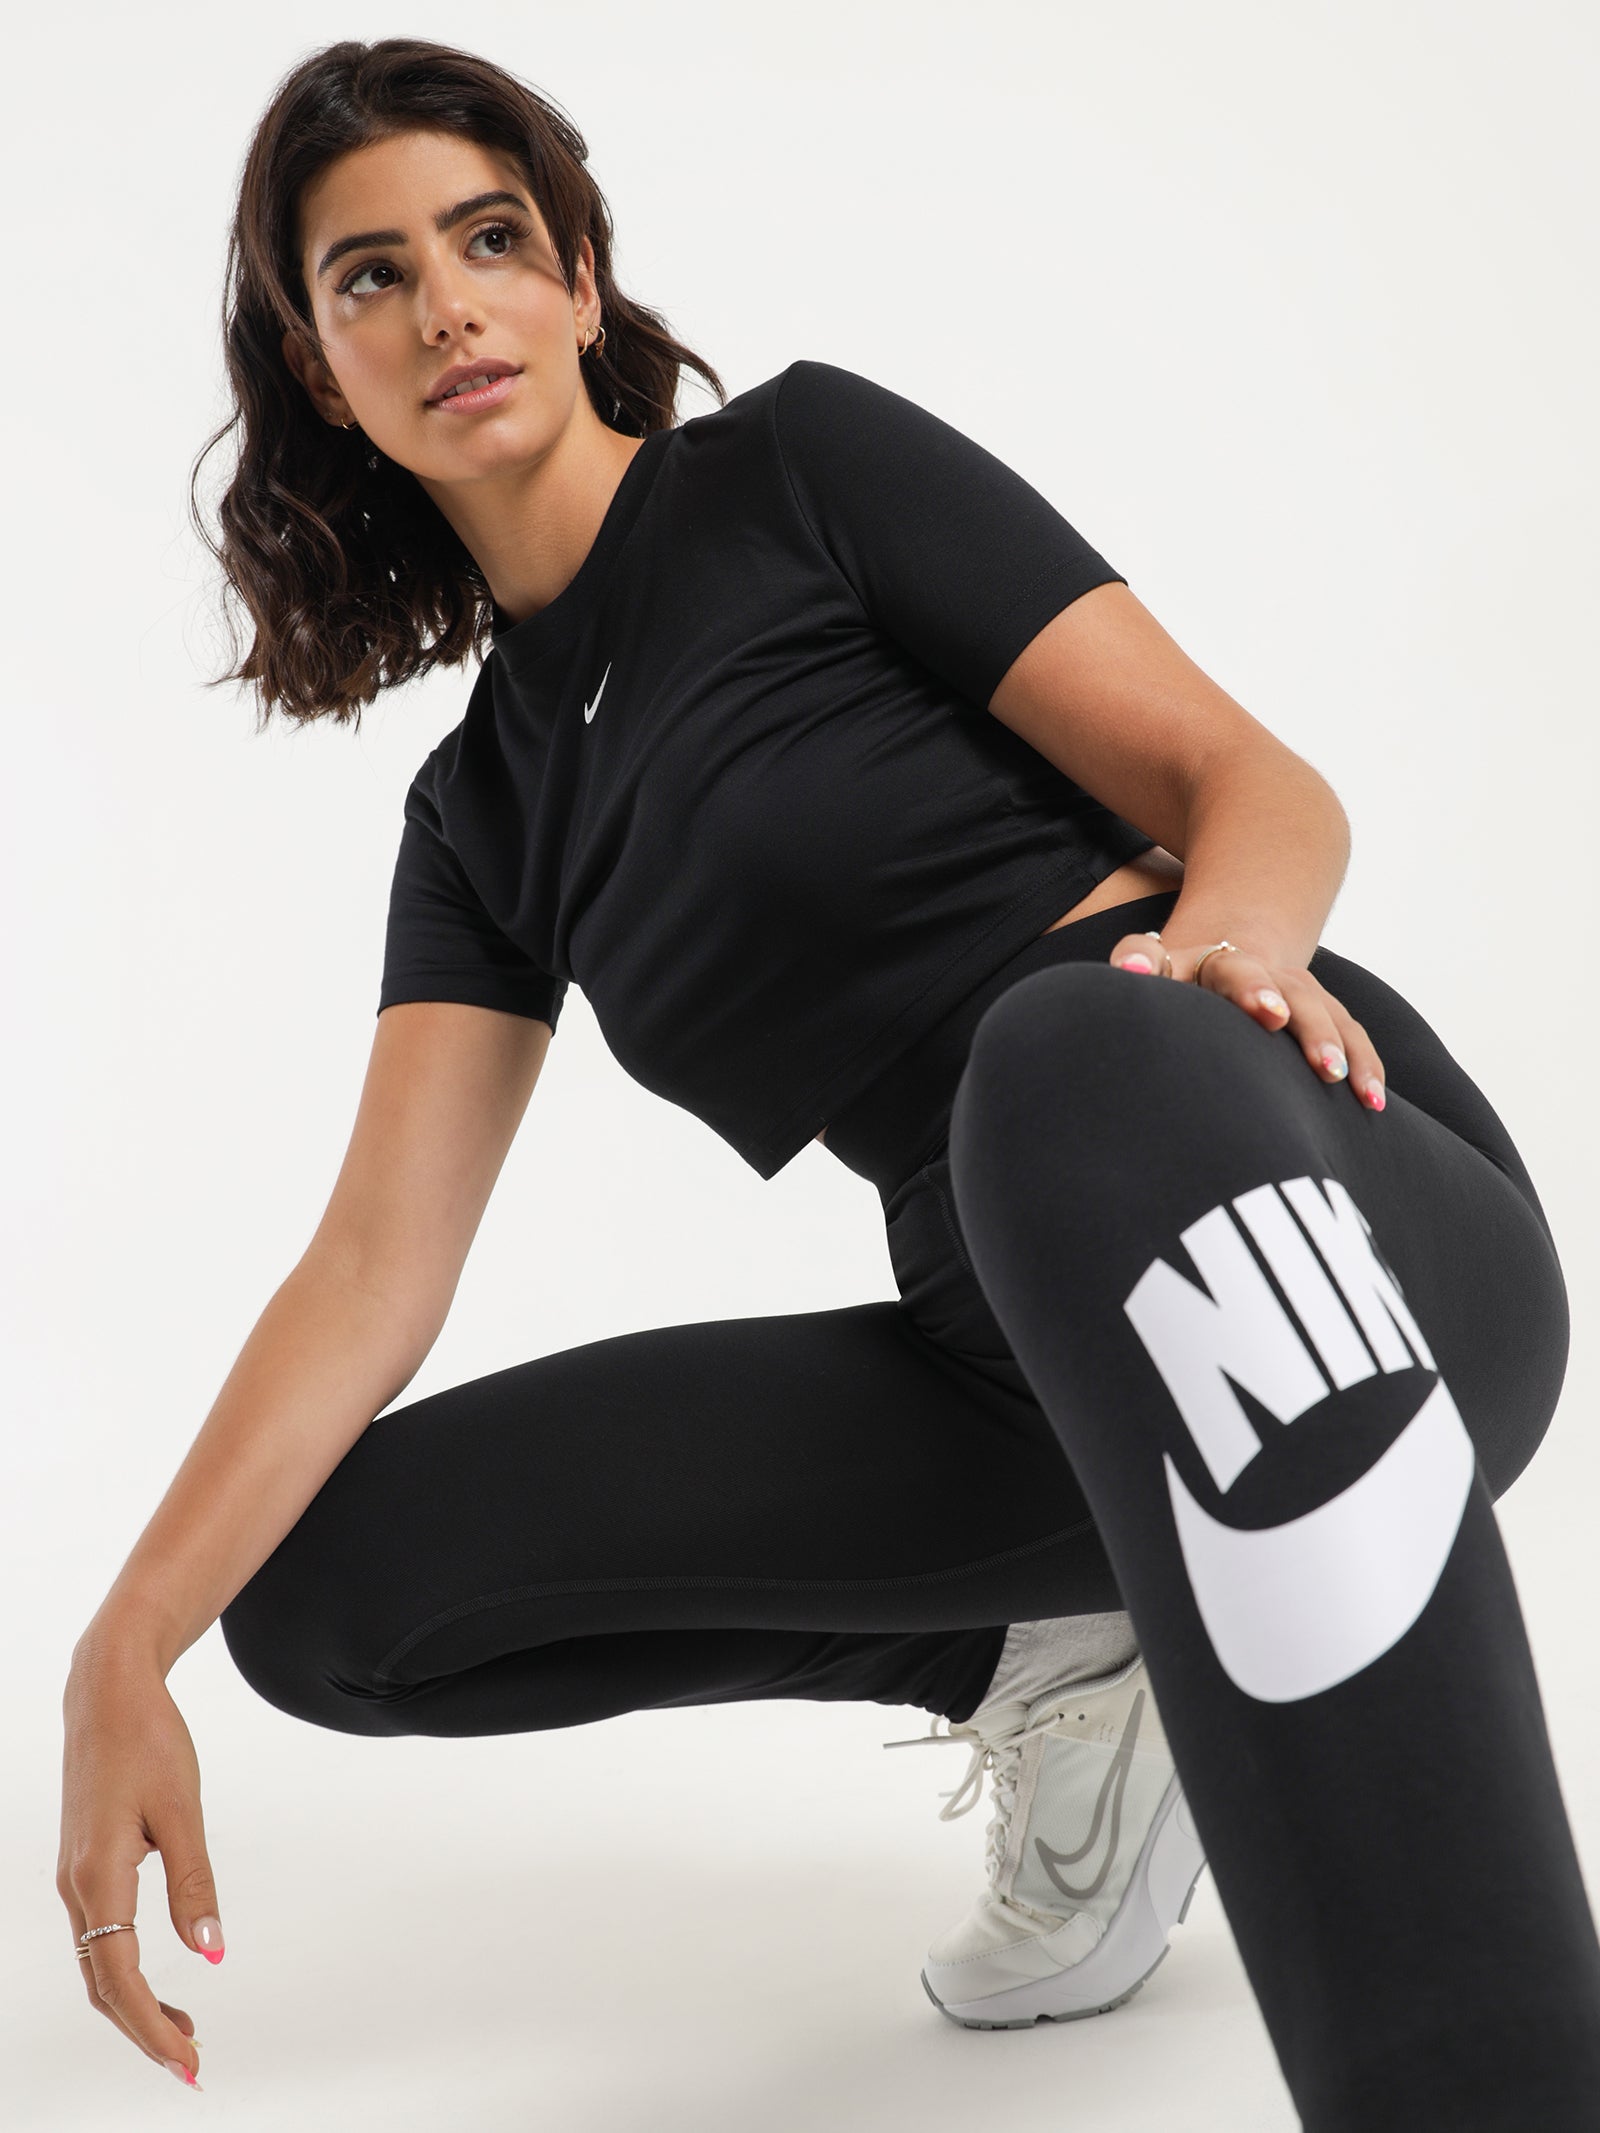 Nike Sportswear Essential Women Lifestyle T-Shirt White Dd1328-100